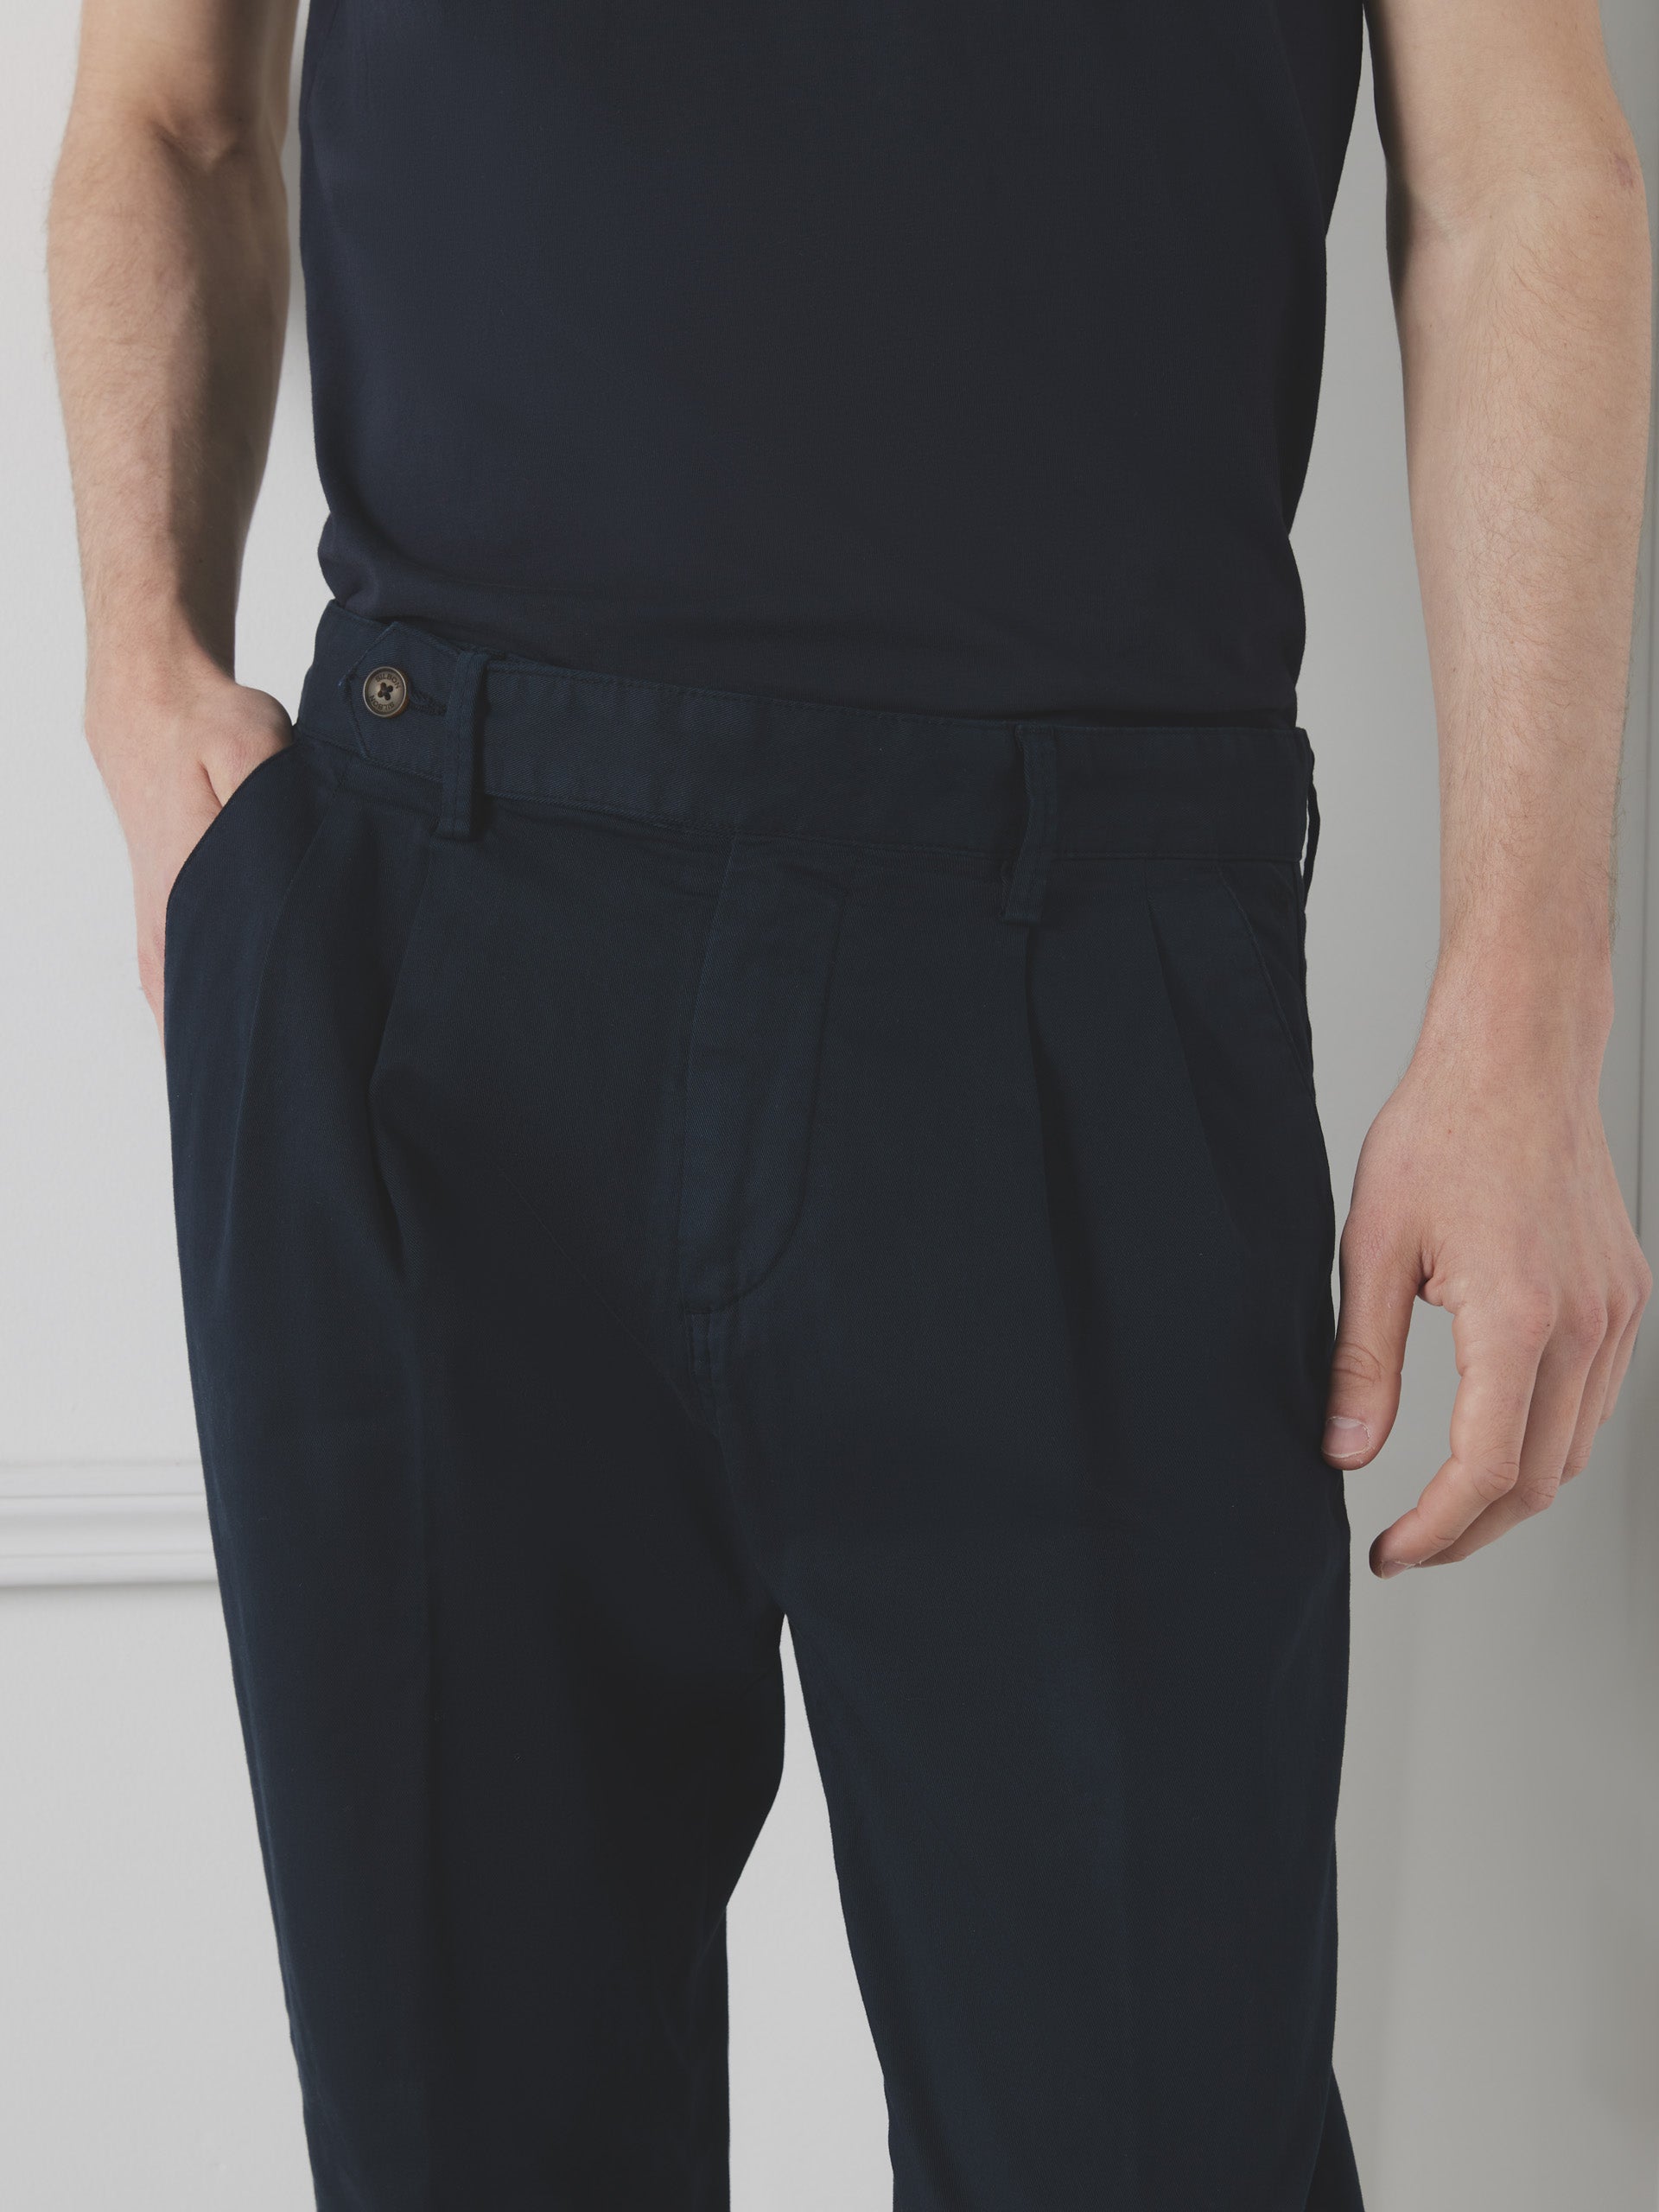 Pantalon double pli marine unique Silbon